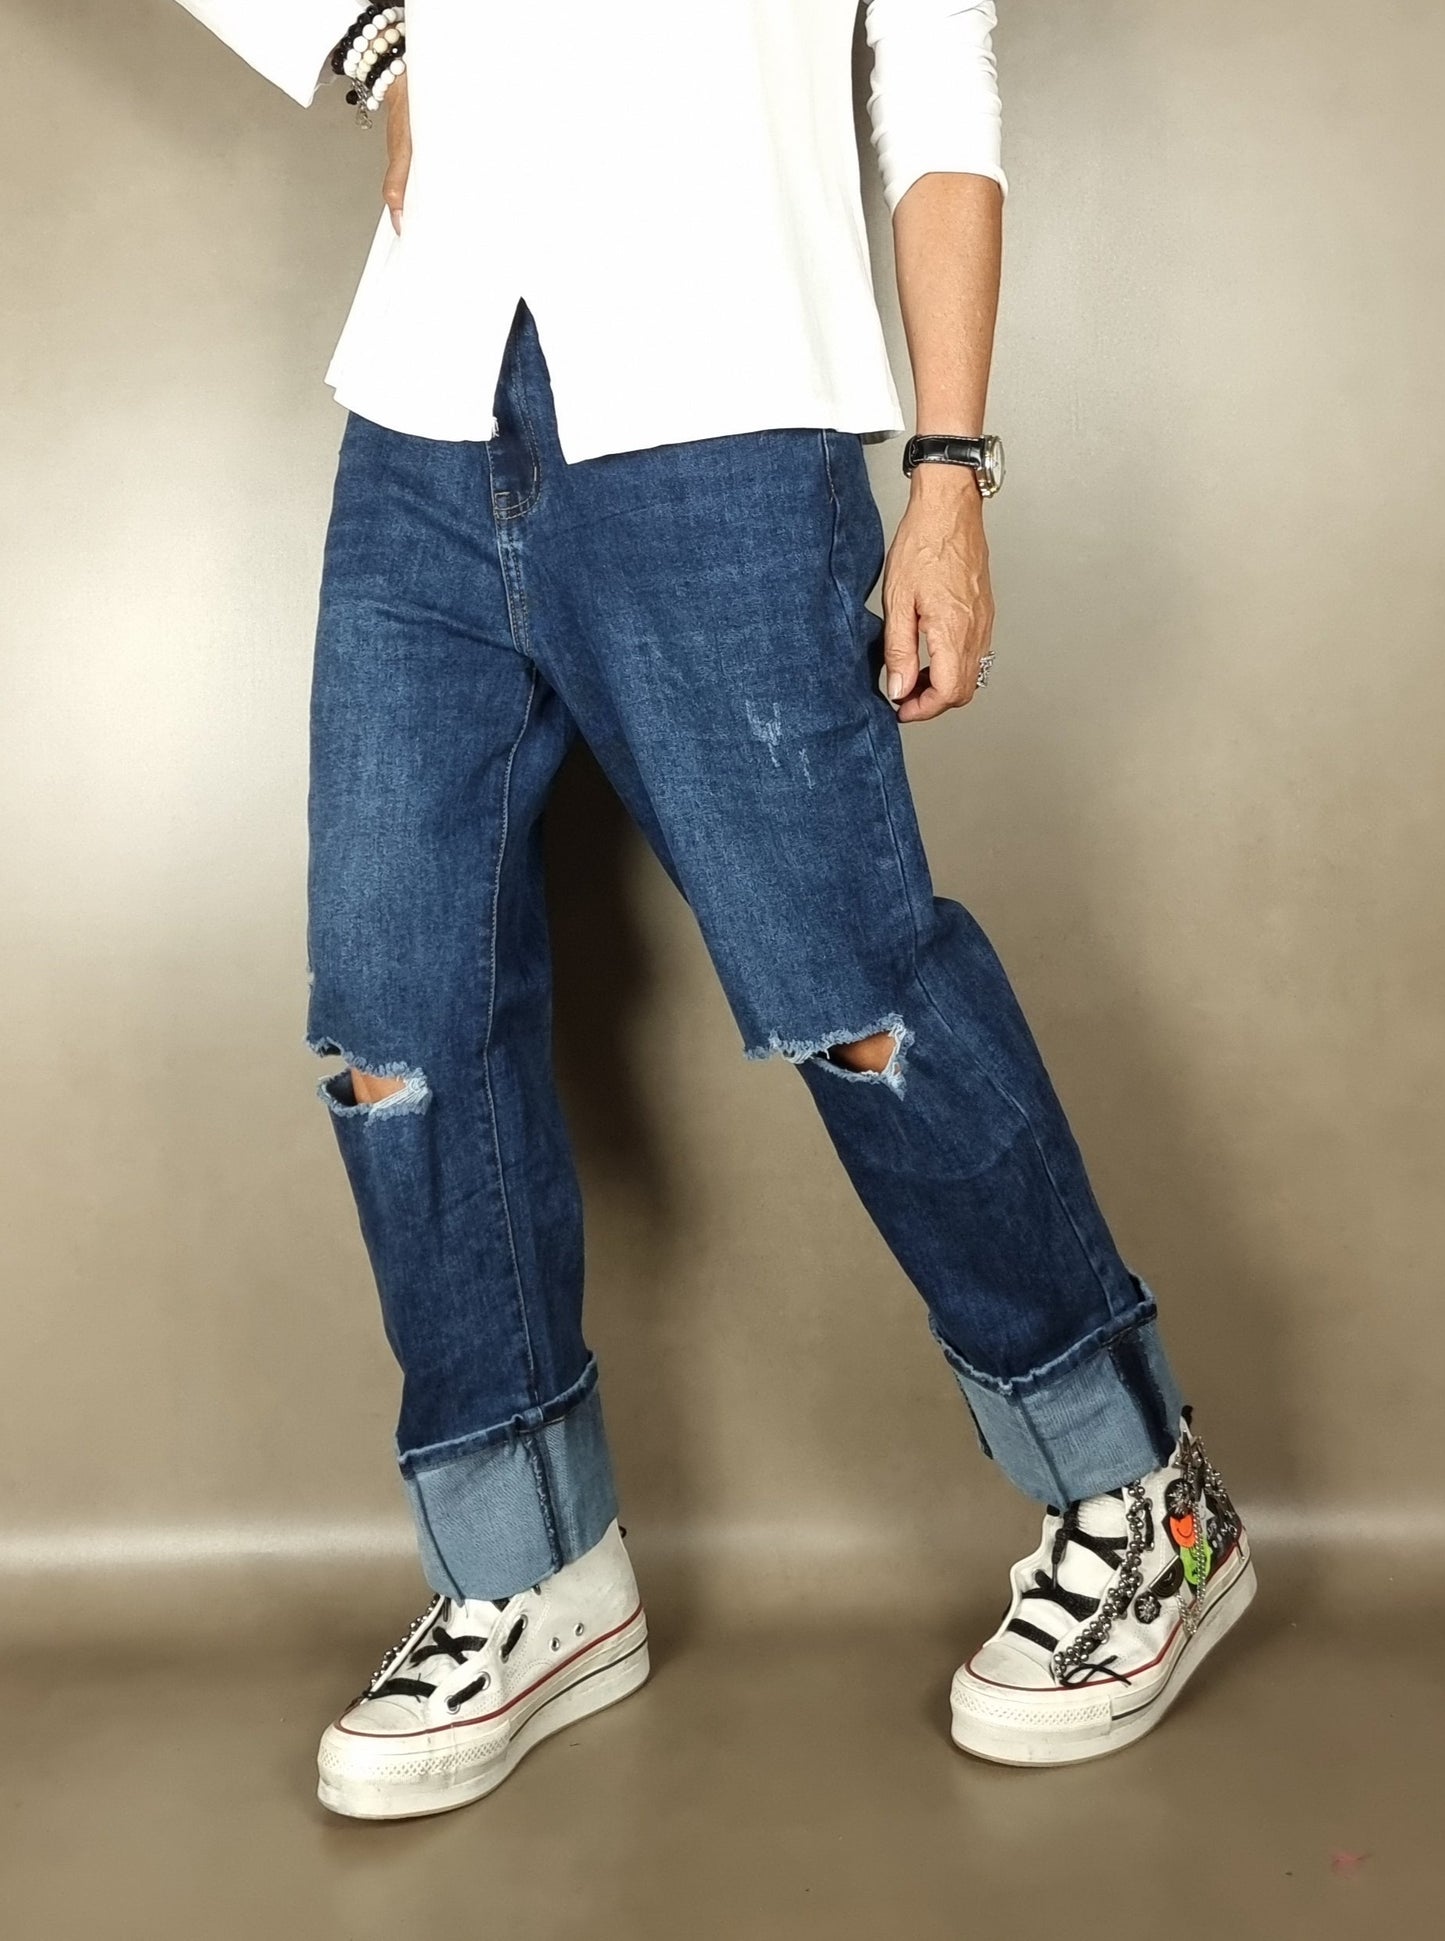 jeans avec poignets larges et déchirures